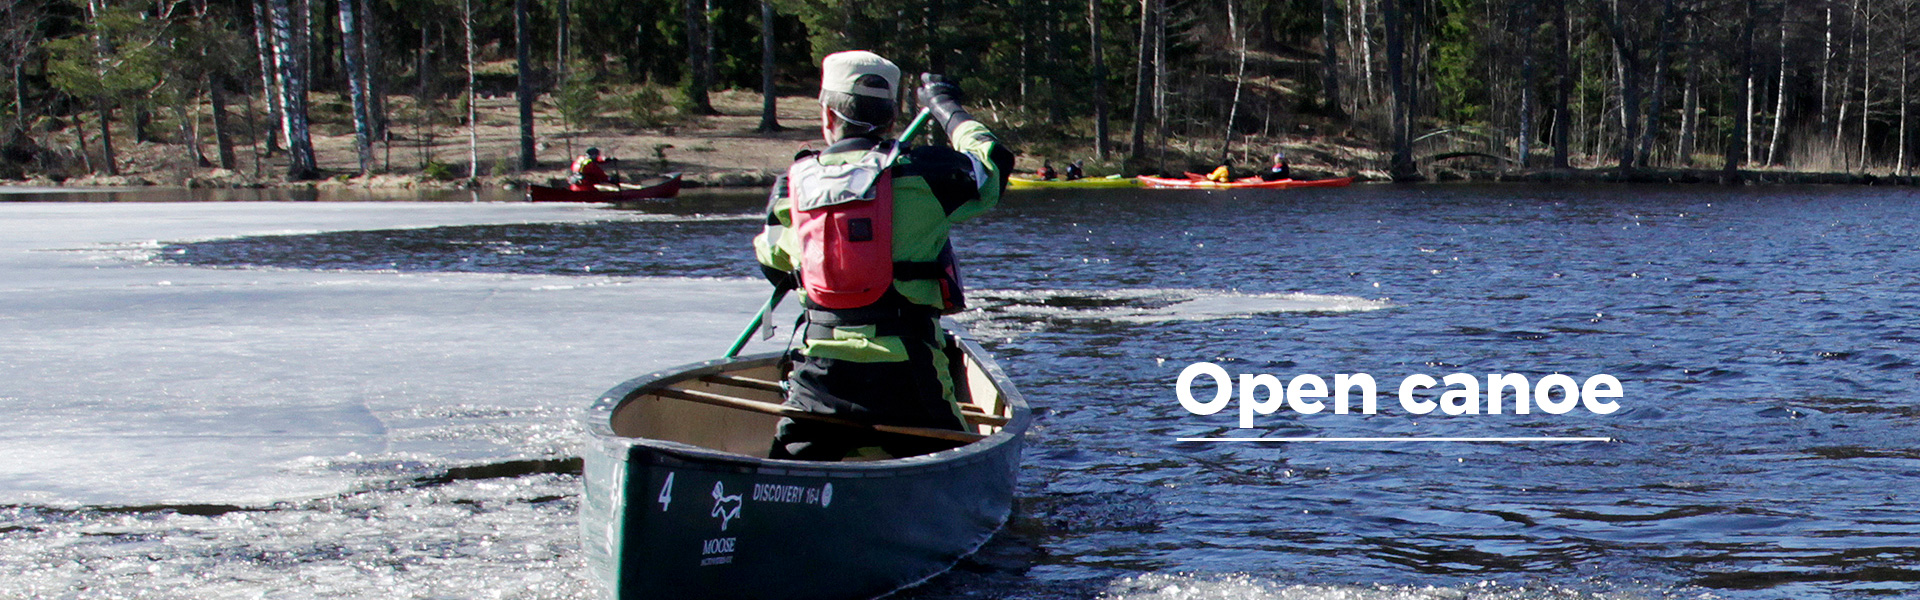 open canoe